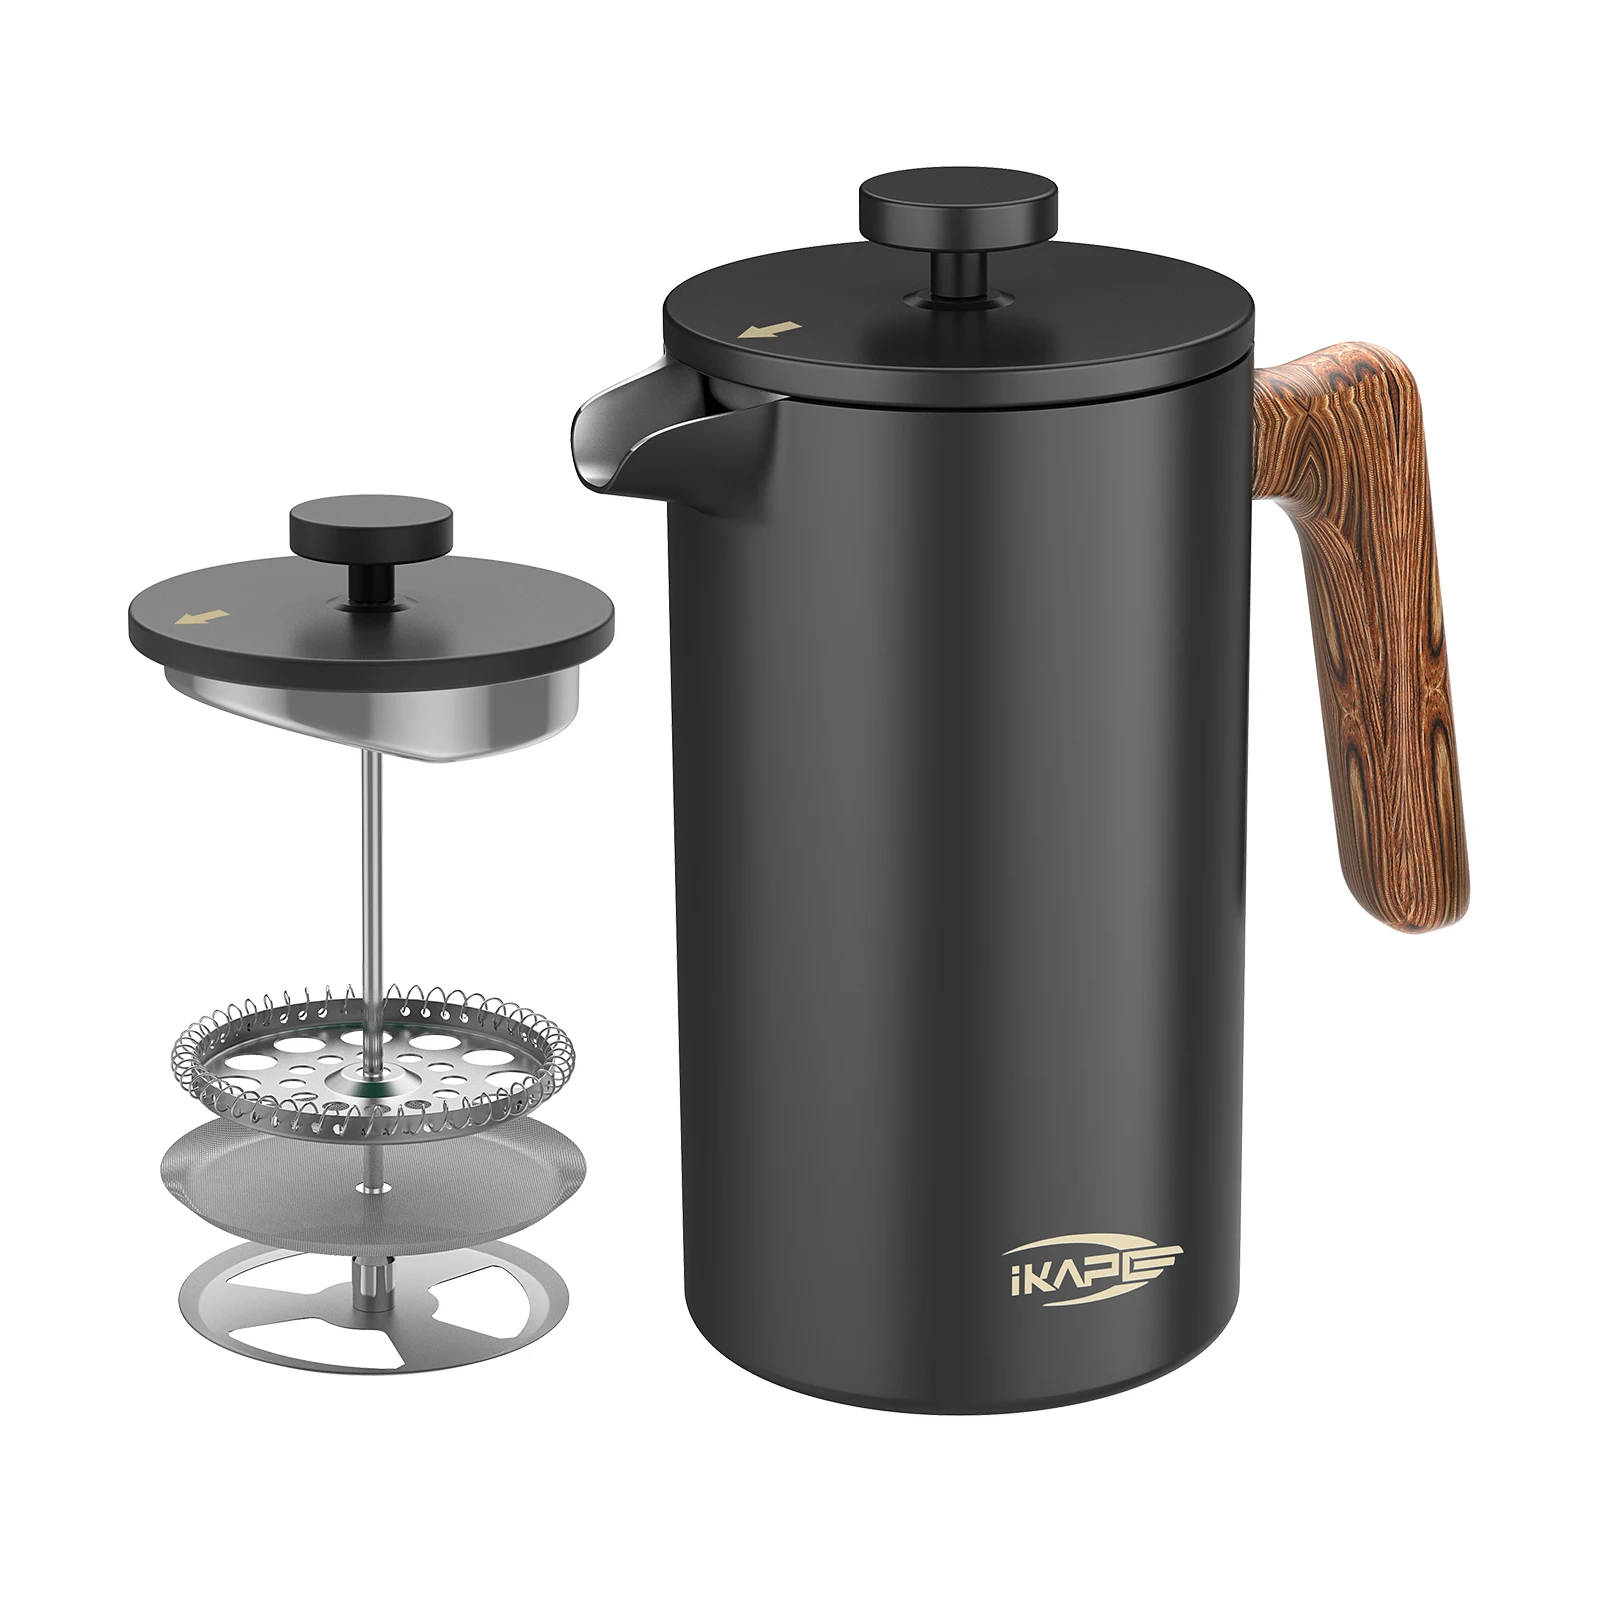 ikape-french-press-coffee-maker-34-oz-304-macchina-per-caffe-espresso-e-te-in-acciaio-inossidabile-con-sistema-di-filtrazione-a-4-livelli-nero